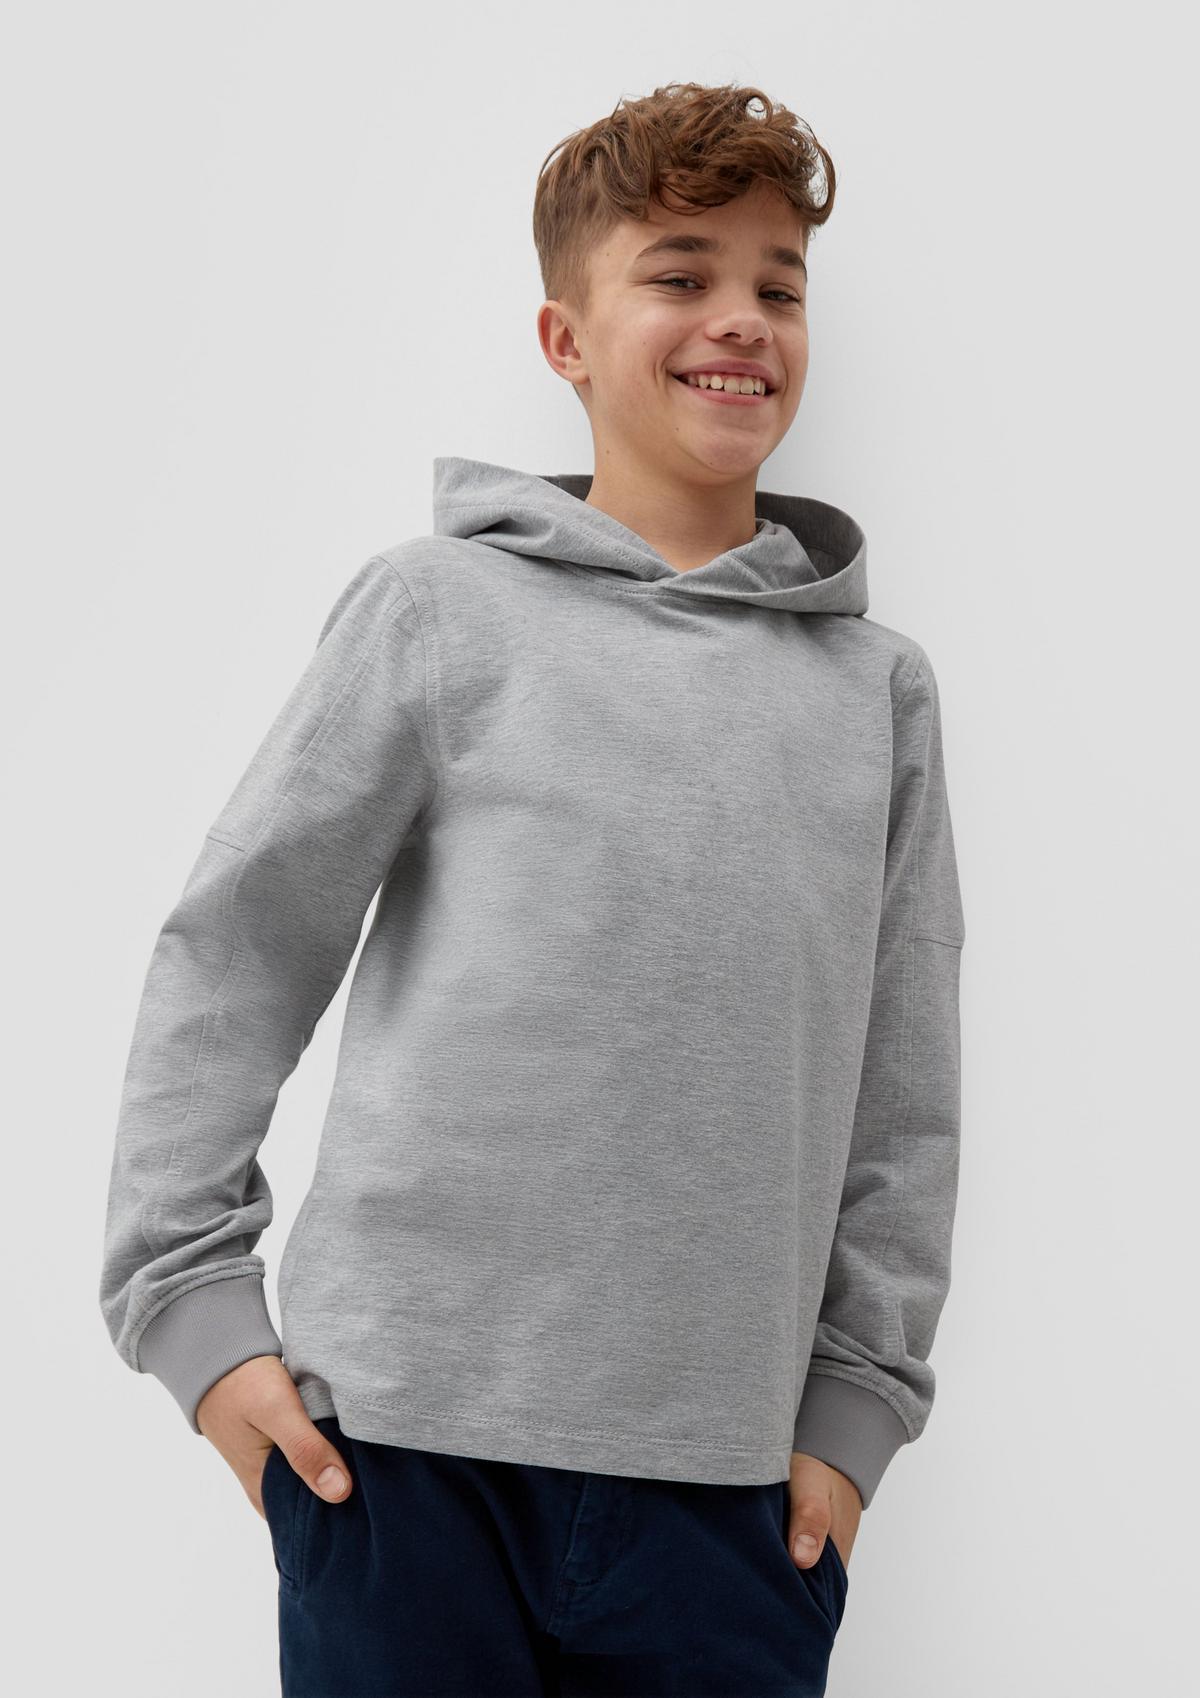 Pullover für Jungen im Sale bei : Jetzt günstig kaufen